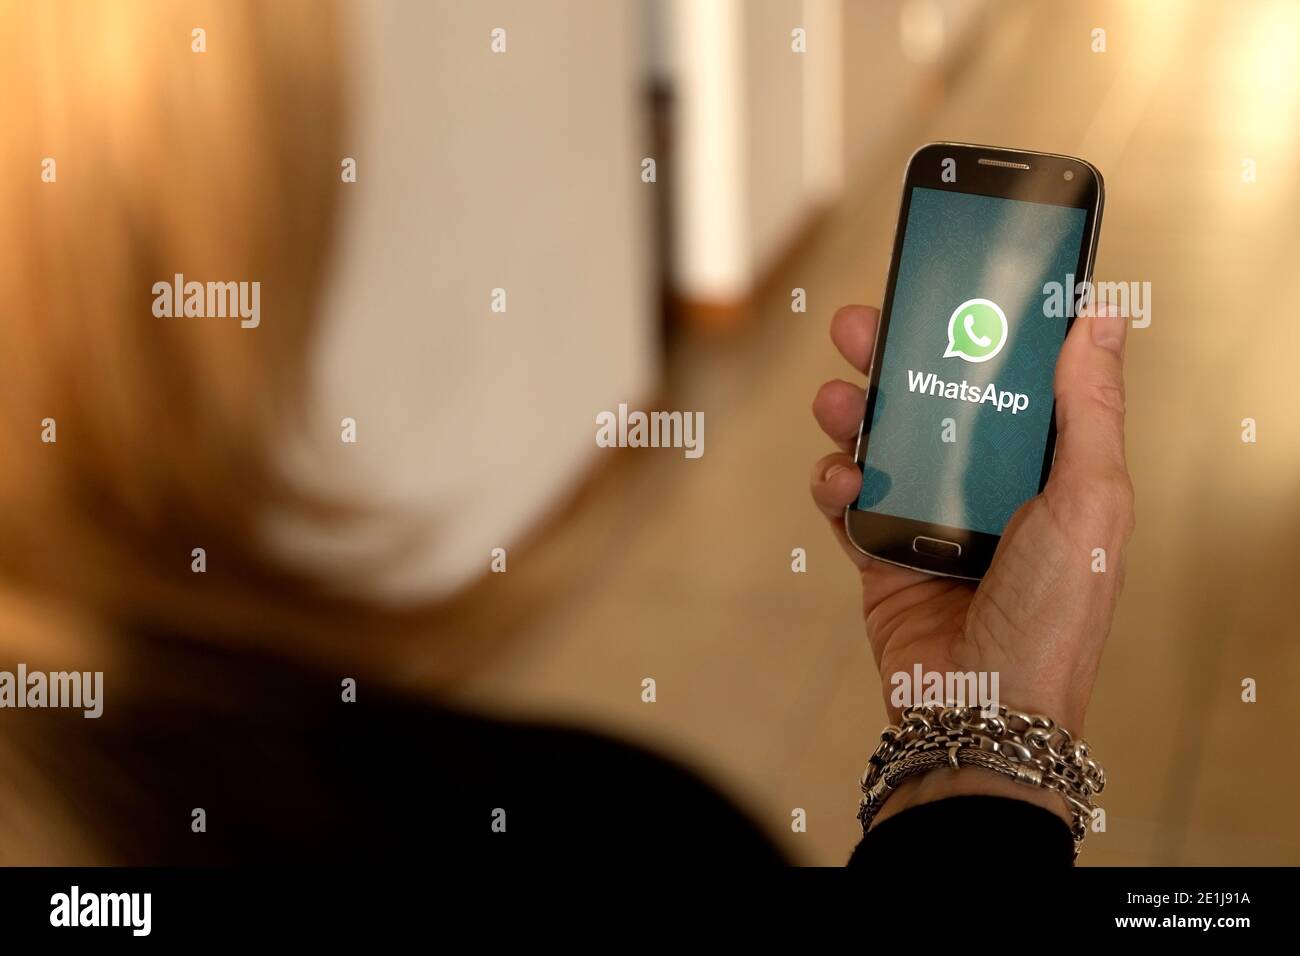 BARCELONE, ESPAGNE - 13 SEPTEMBRE 2017 : femme âgée avec un smartphone dans ses mains et une application whatsapp à l'écran. Technologie. Communications. Banque D'Images